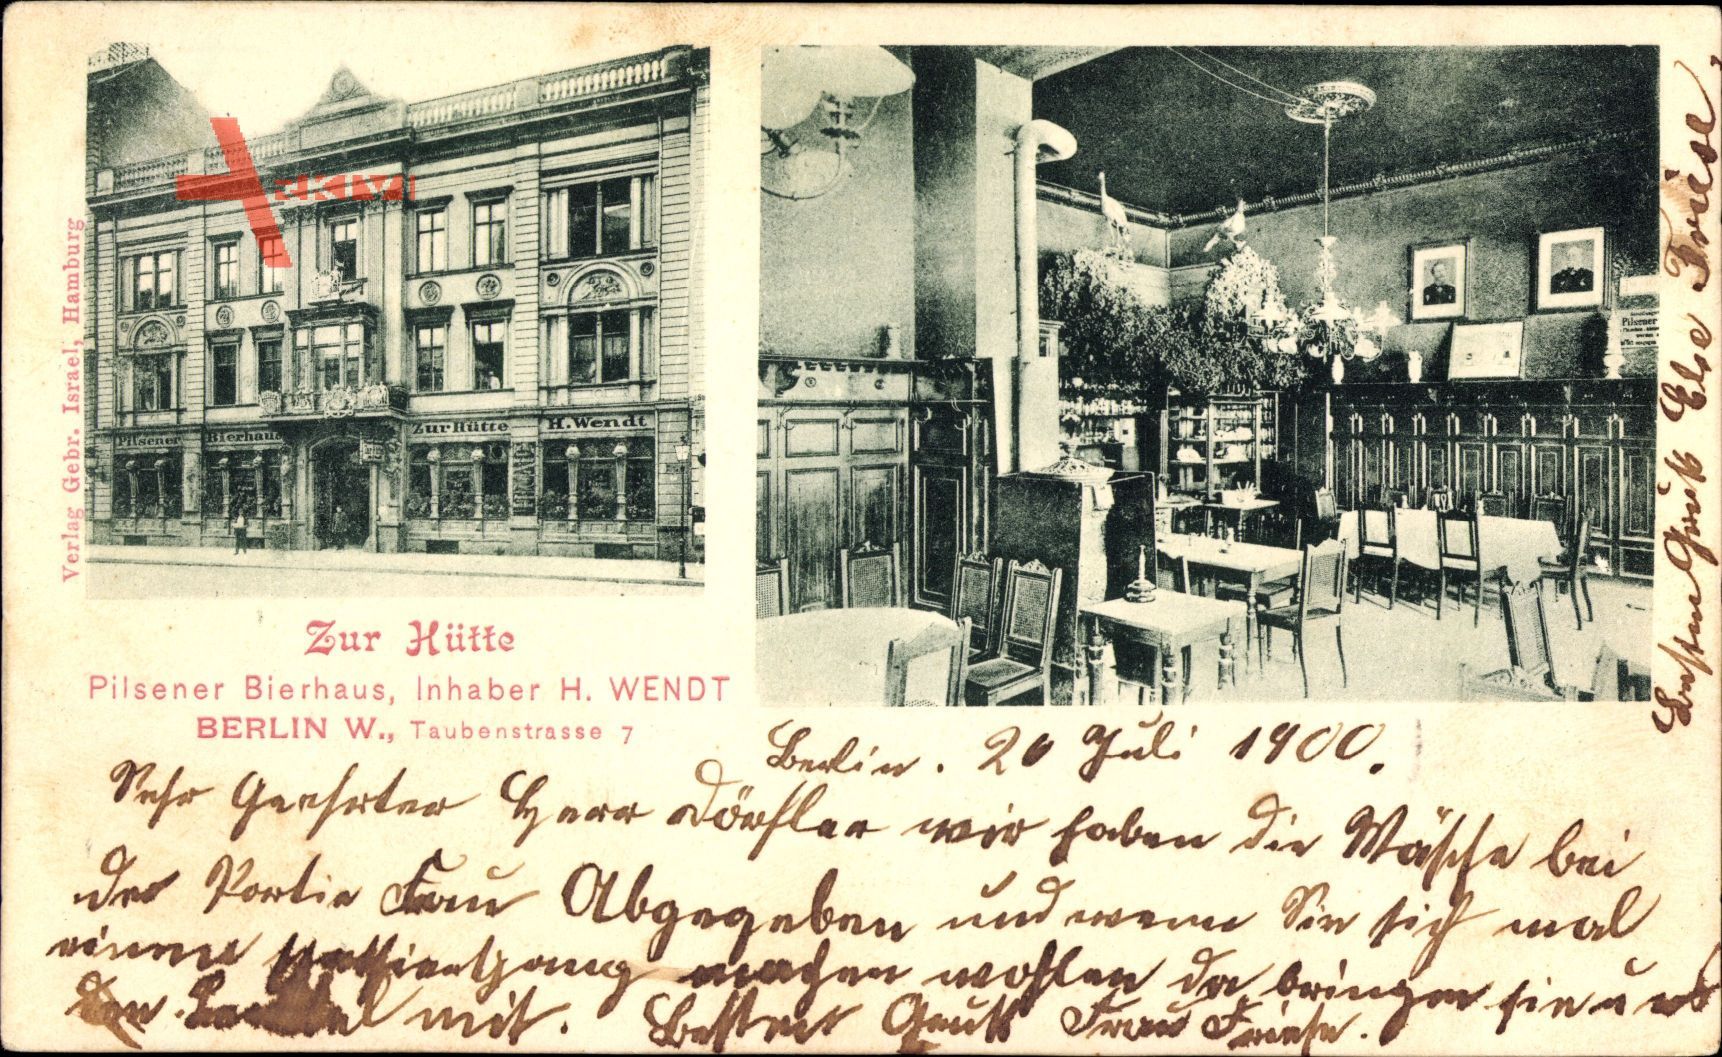 Berlin, Taubenstraße 7, Zur Hütte, Pilsener Bierhaus, Inh. H. Wendt